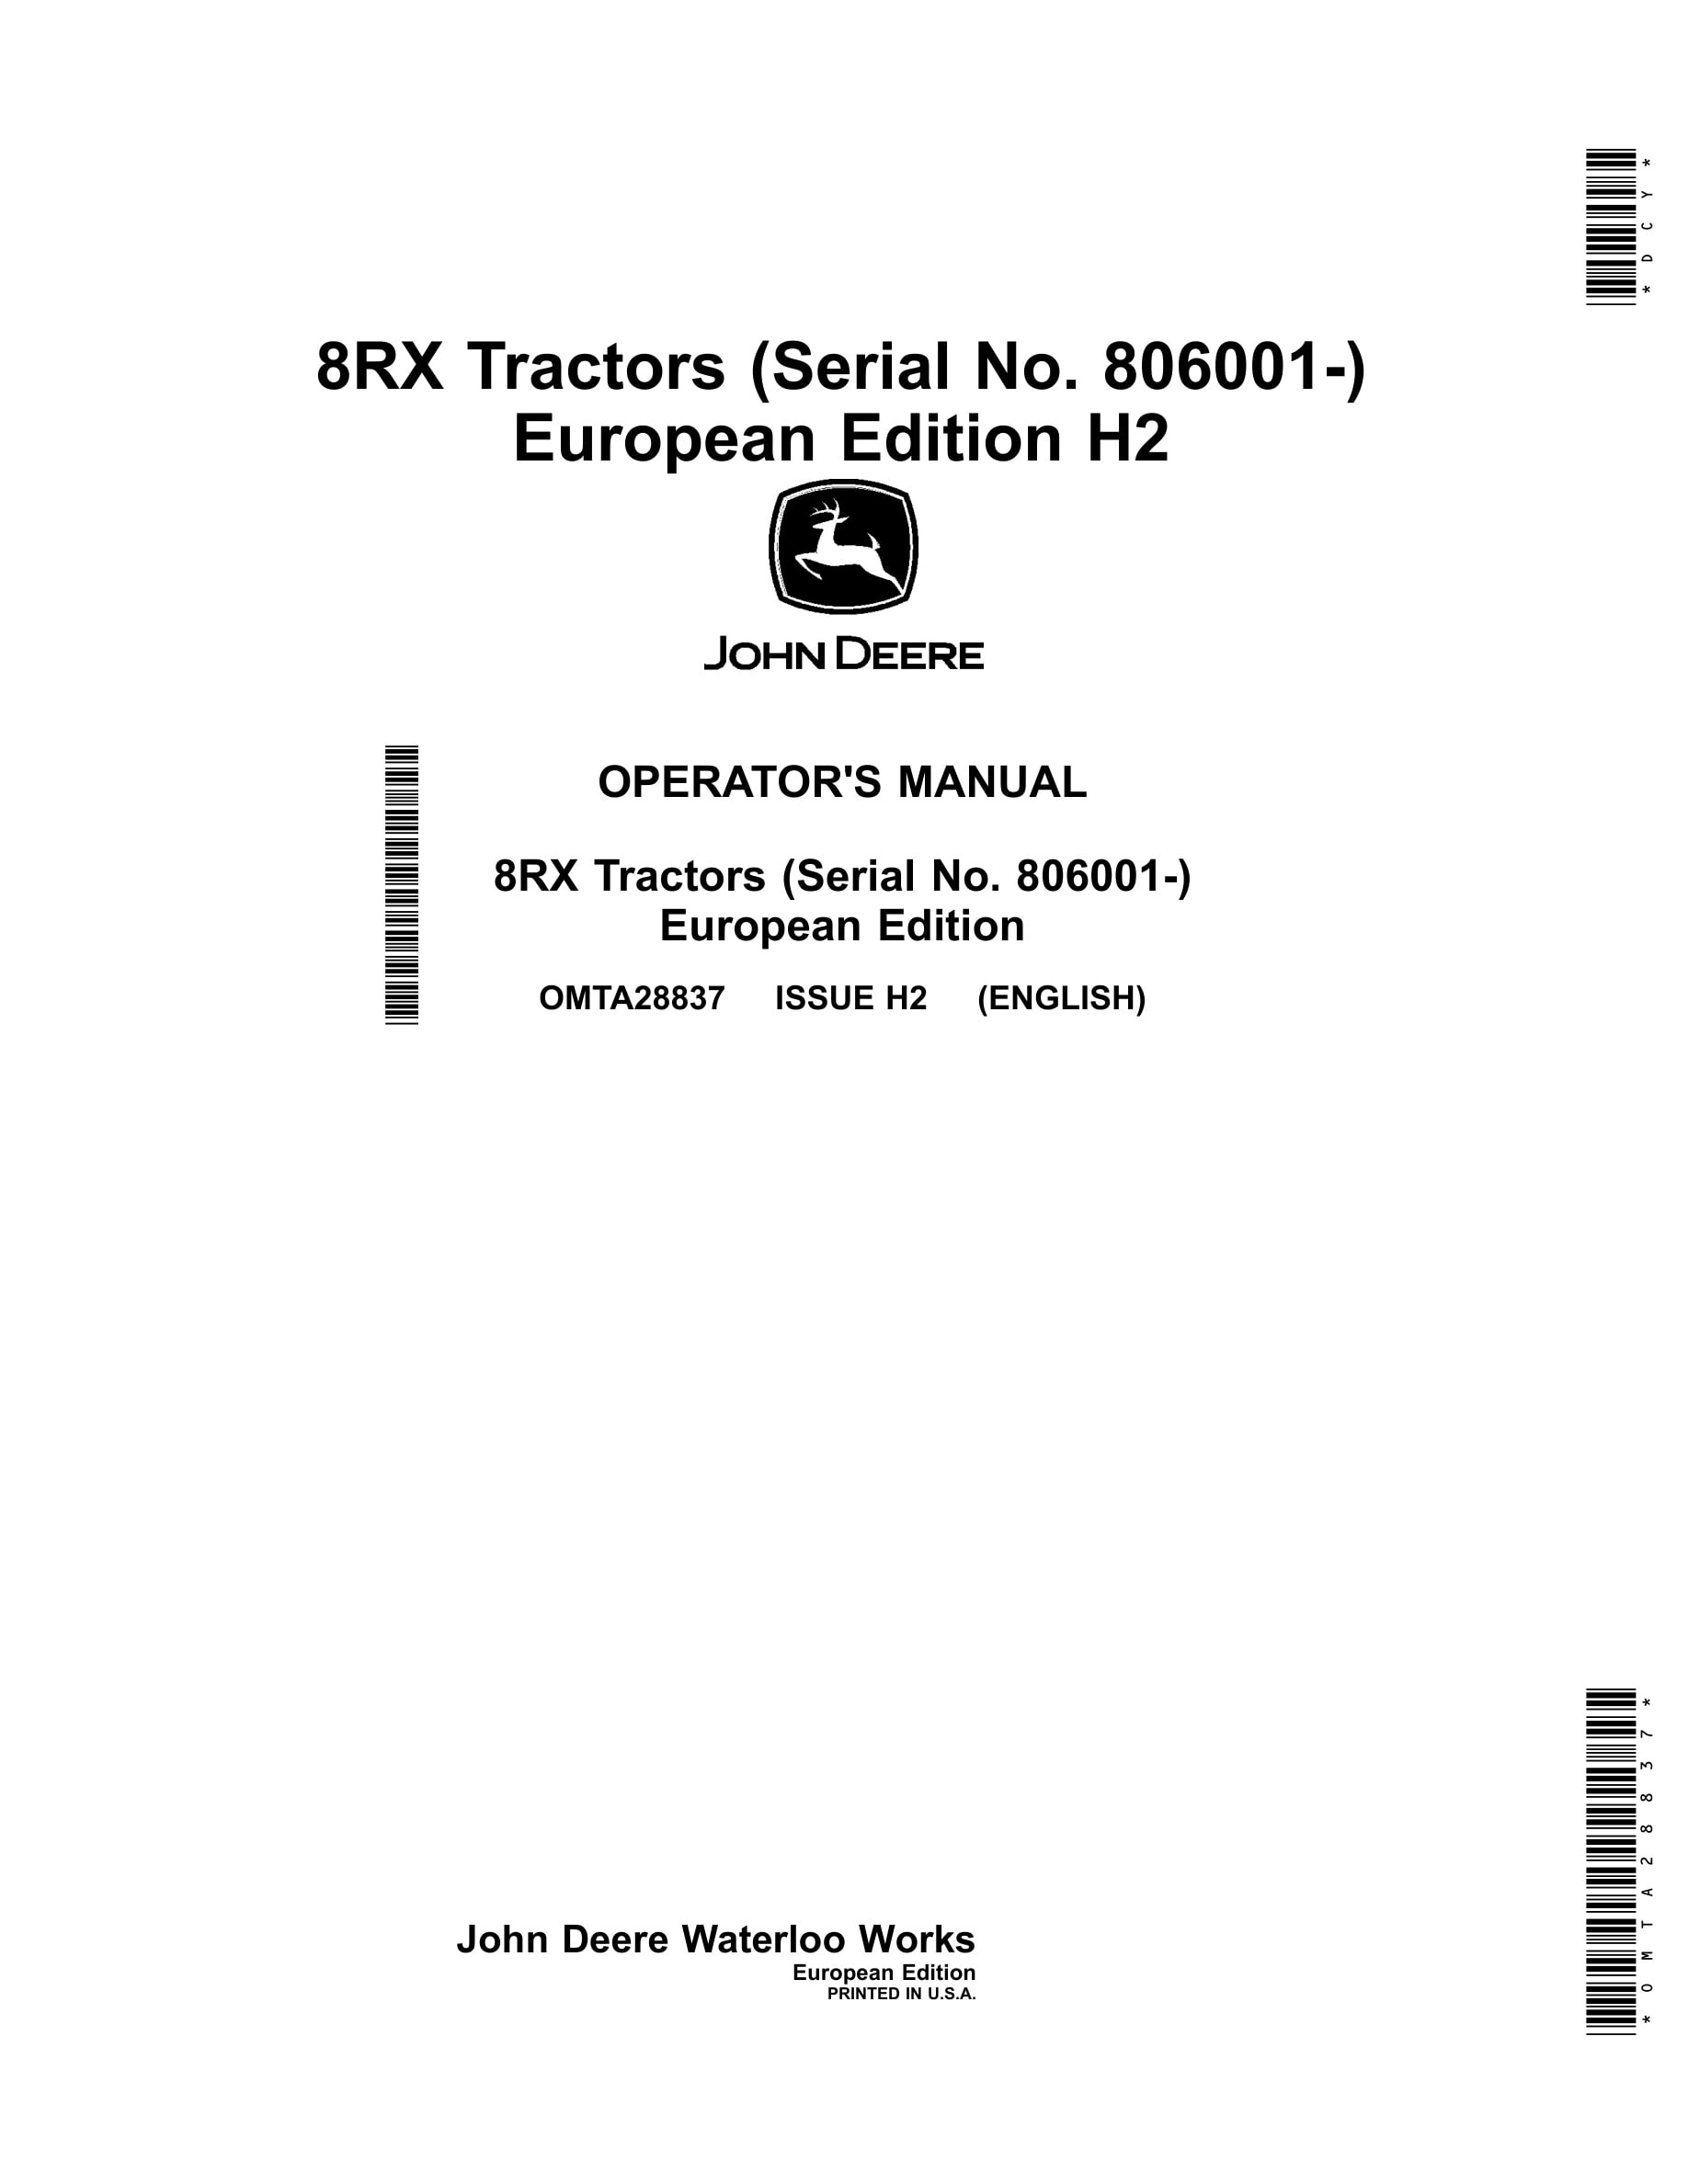 John Deere 8rx Tractors Operator Manuals OMTA28837-1